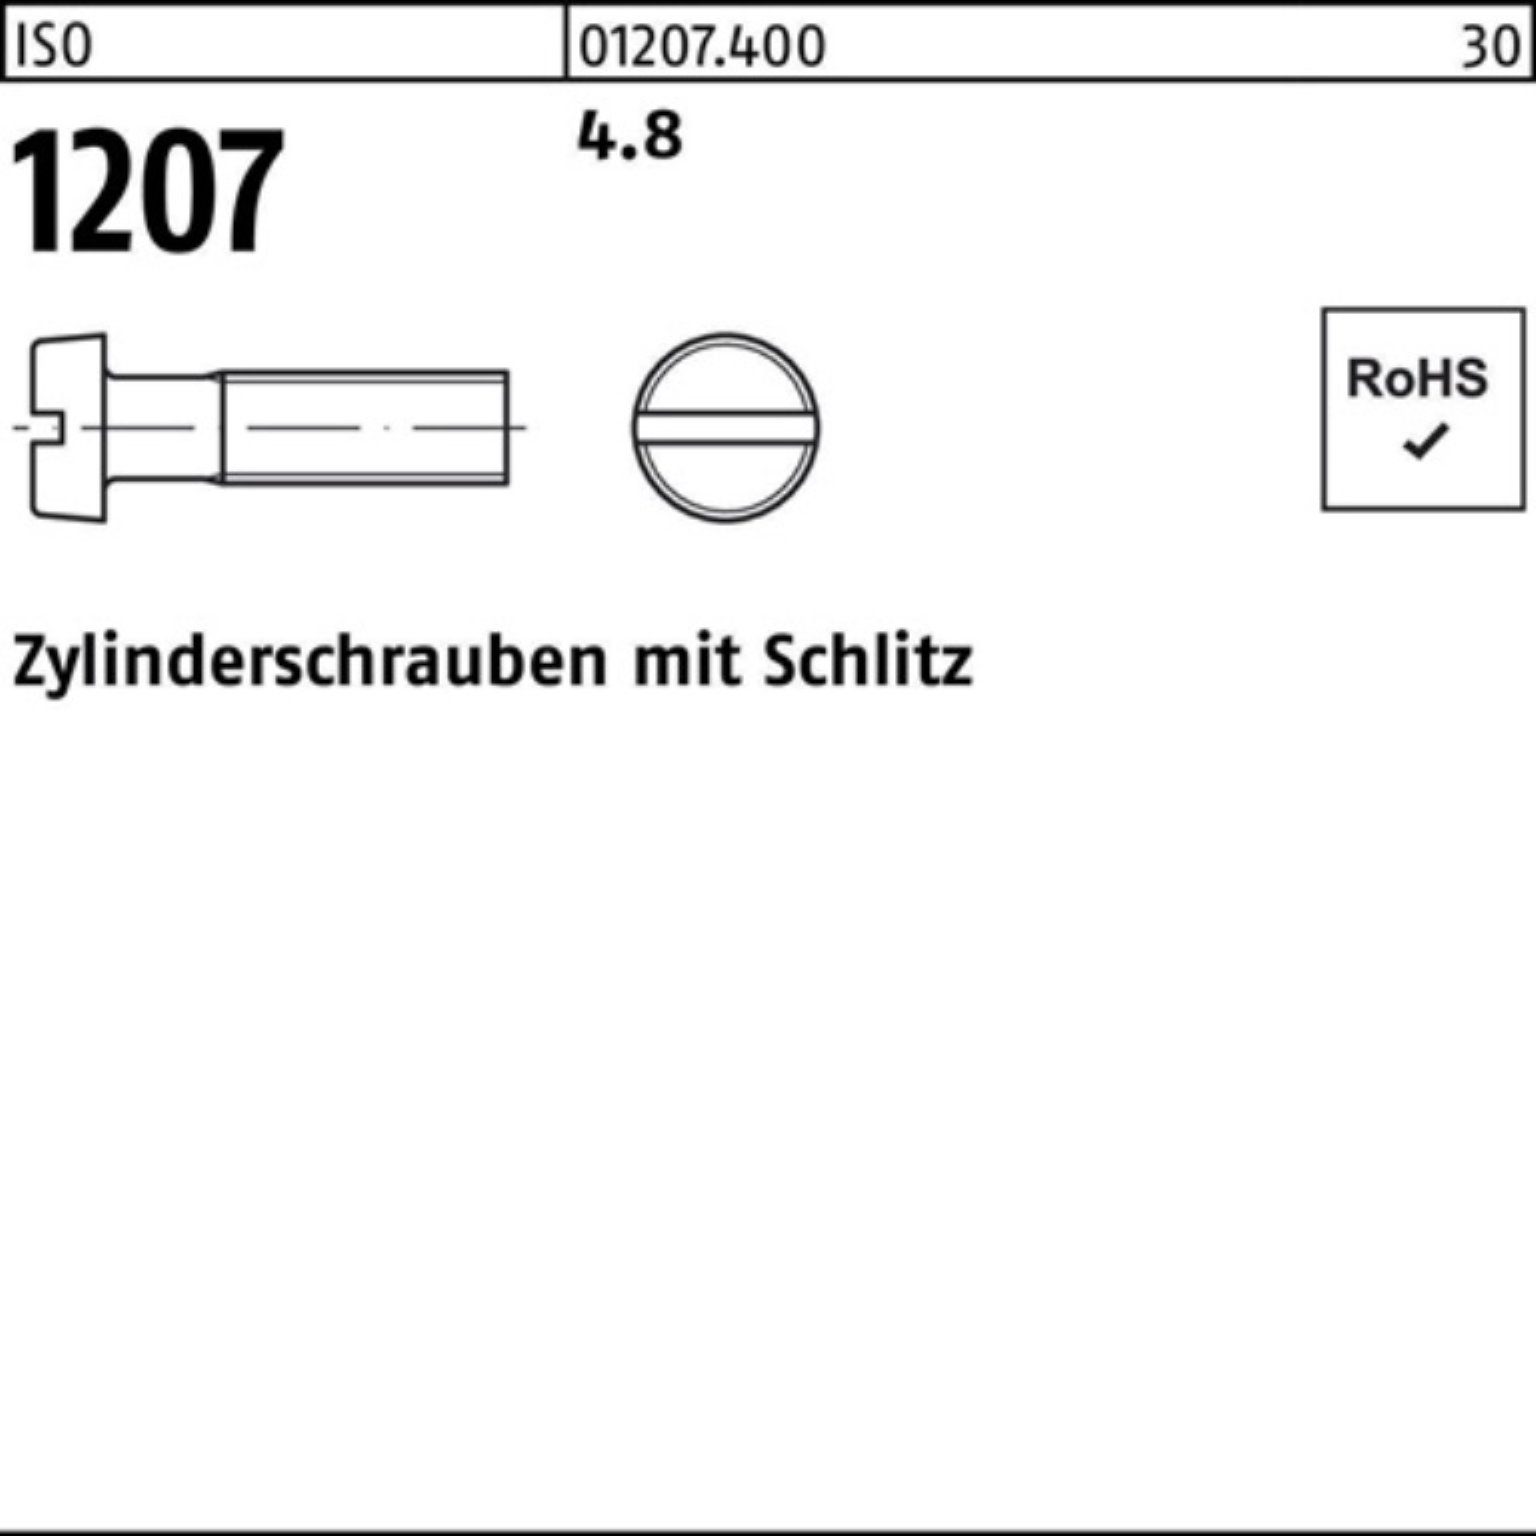 Stück Zylinderschraube Reyher 4.8 8 2000 Zylinderschraube Pack M2,5x Schlitz 1207 ISO 2000er